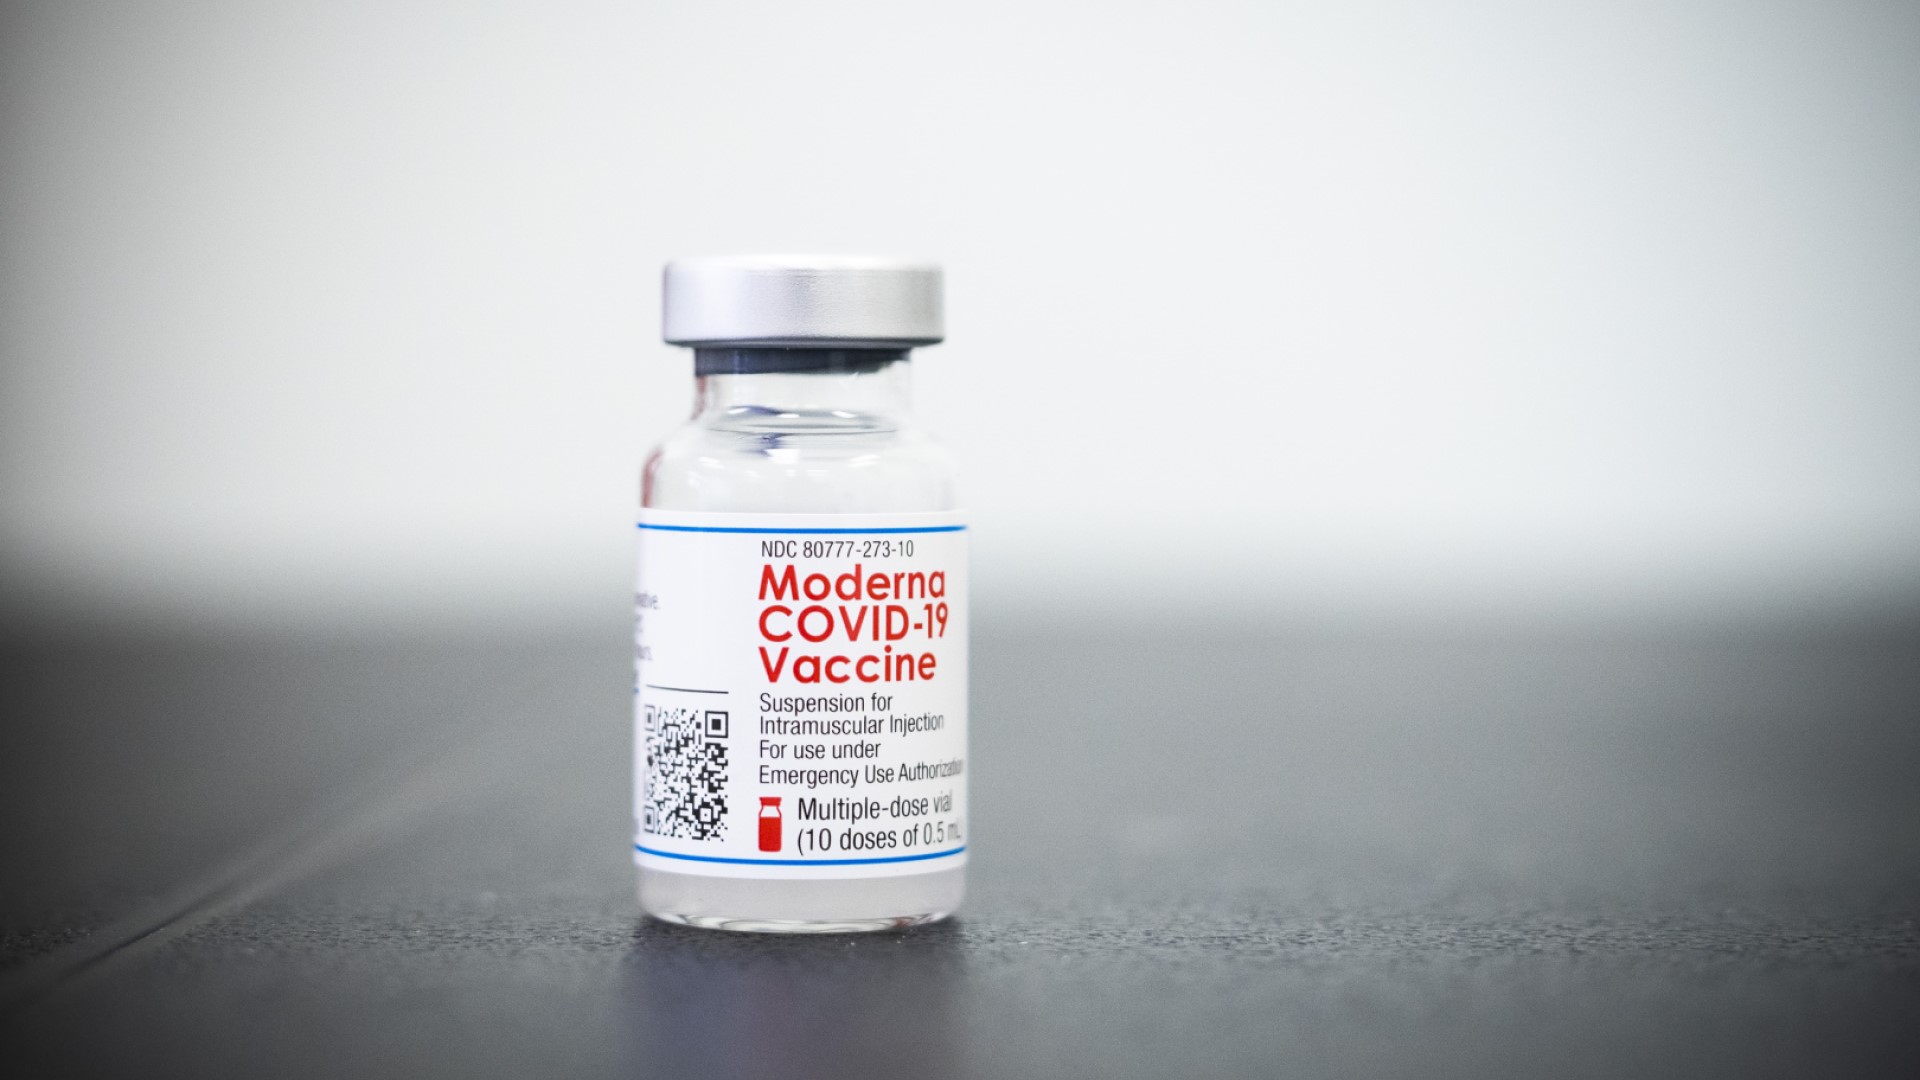 เดนมาร์กเผย การใช้วัคซีนร่วมระหว่าง AstraZeneca และวัคซีน mRNA สามารถป้องกันไวรัสโควิด-19 สายพันธุ์อัลฟาได้ดี